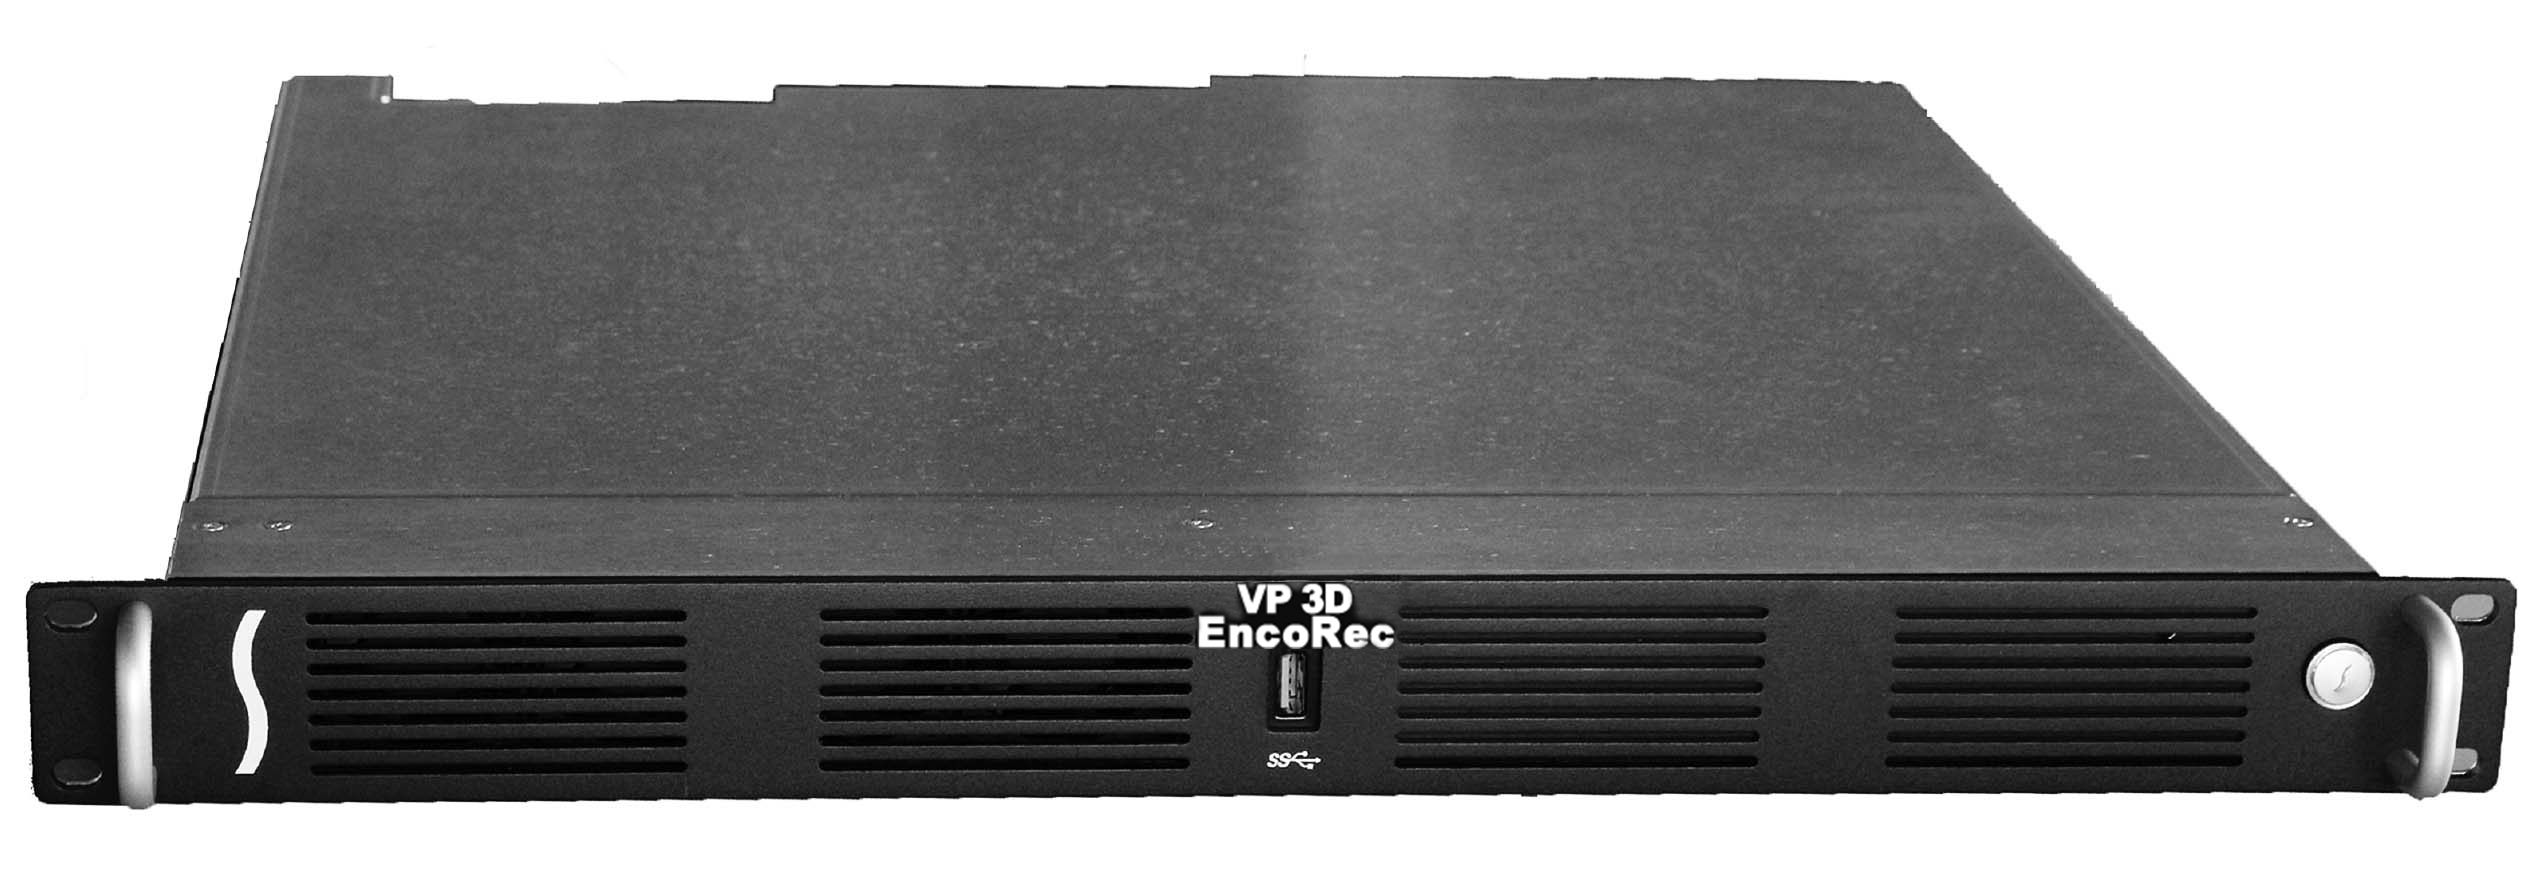 VP 3D EncoRec